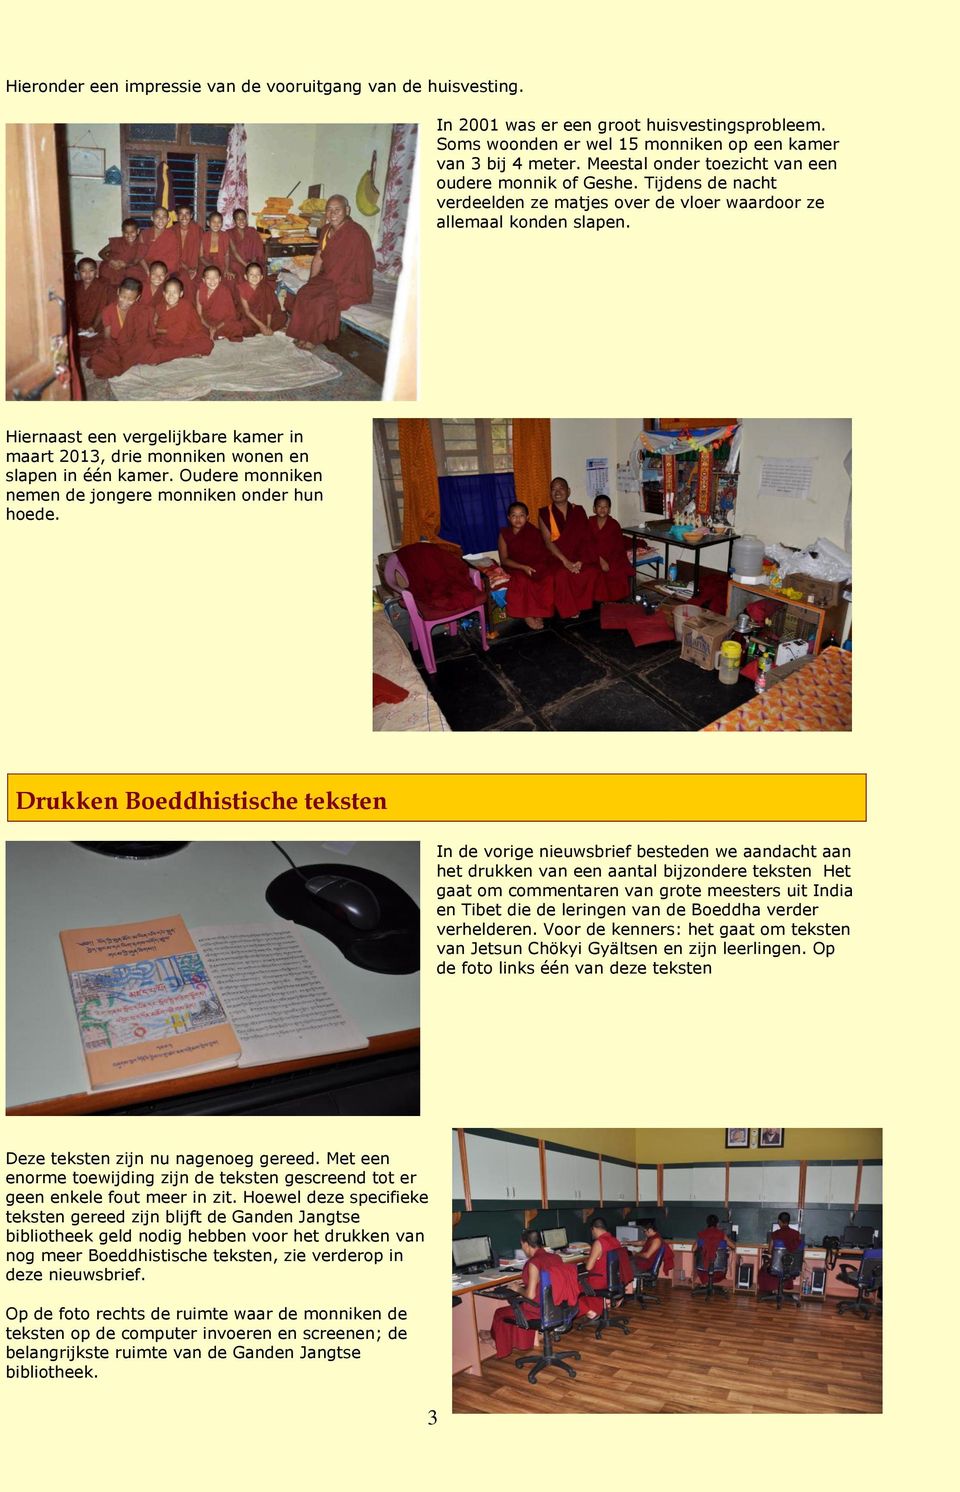 Hiernaast een vergelijkbare kamer in maart 2013, drie monniken wonen en slapen in één kamer. Oudere monniken nemen de jongere monniken onder hun hoede.